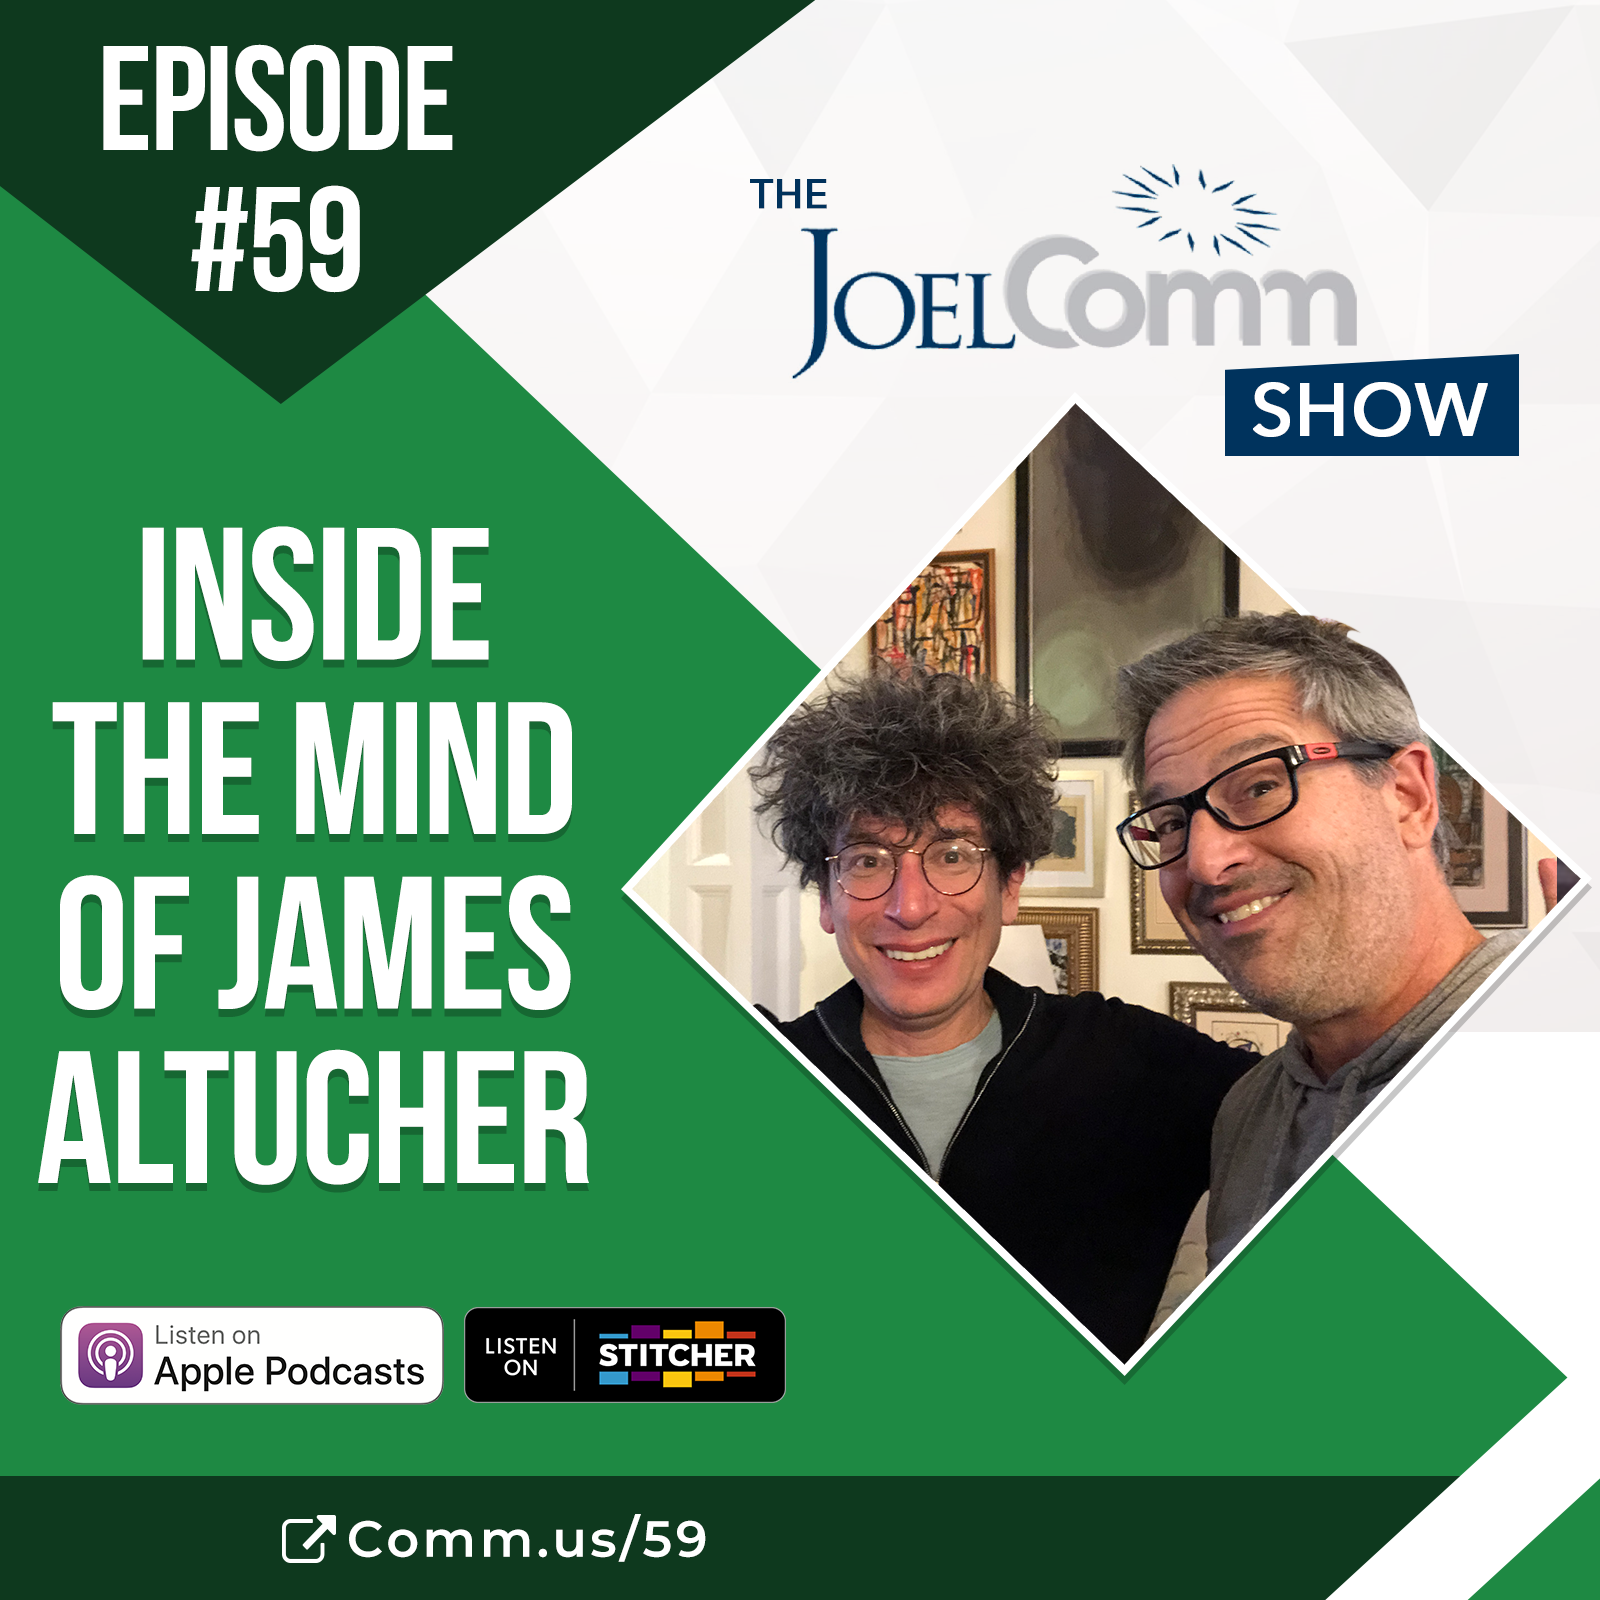 Inside the Mind of James Altucher - Episode 059